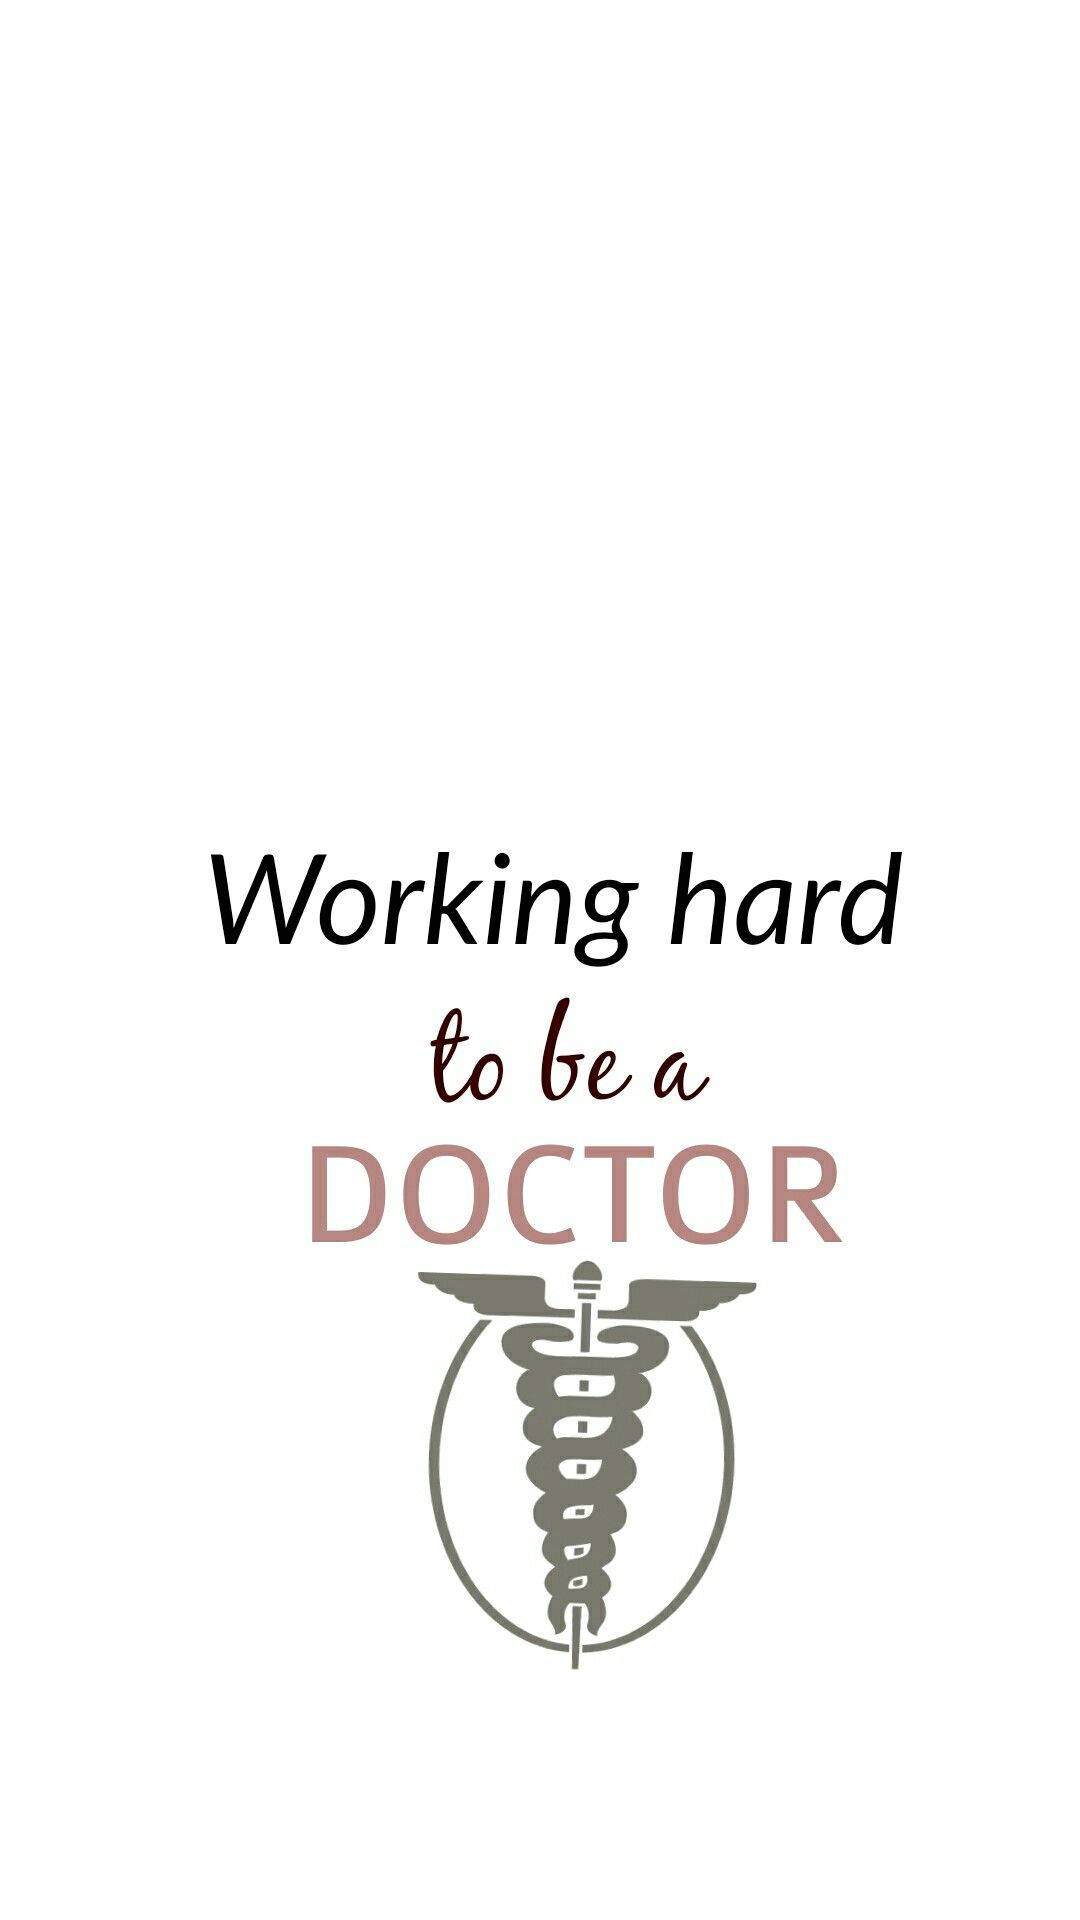 Baggrund: Arbejd hårdt og opnå medicinsk motivation med dette stemningsfulde poster-baggrundsbillede. Wallpaper